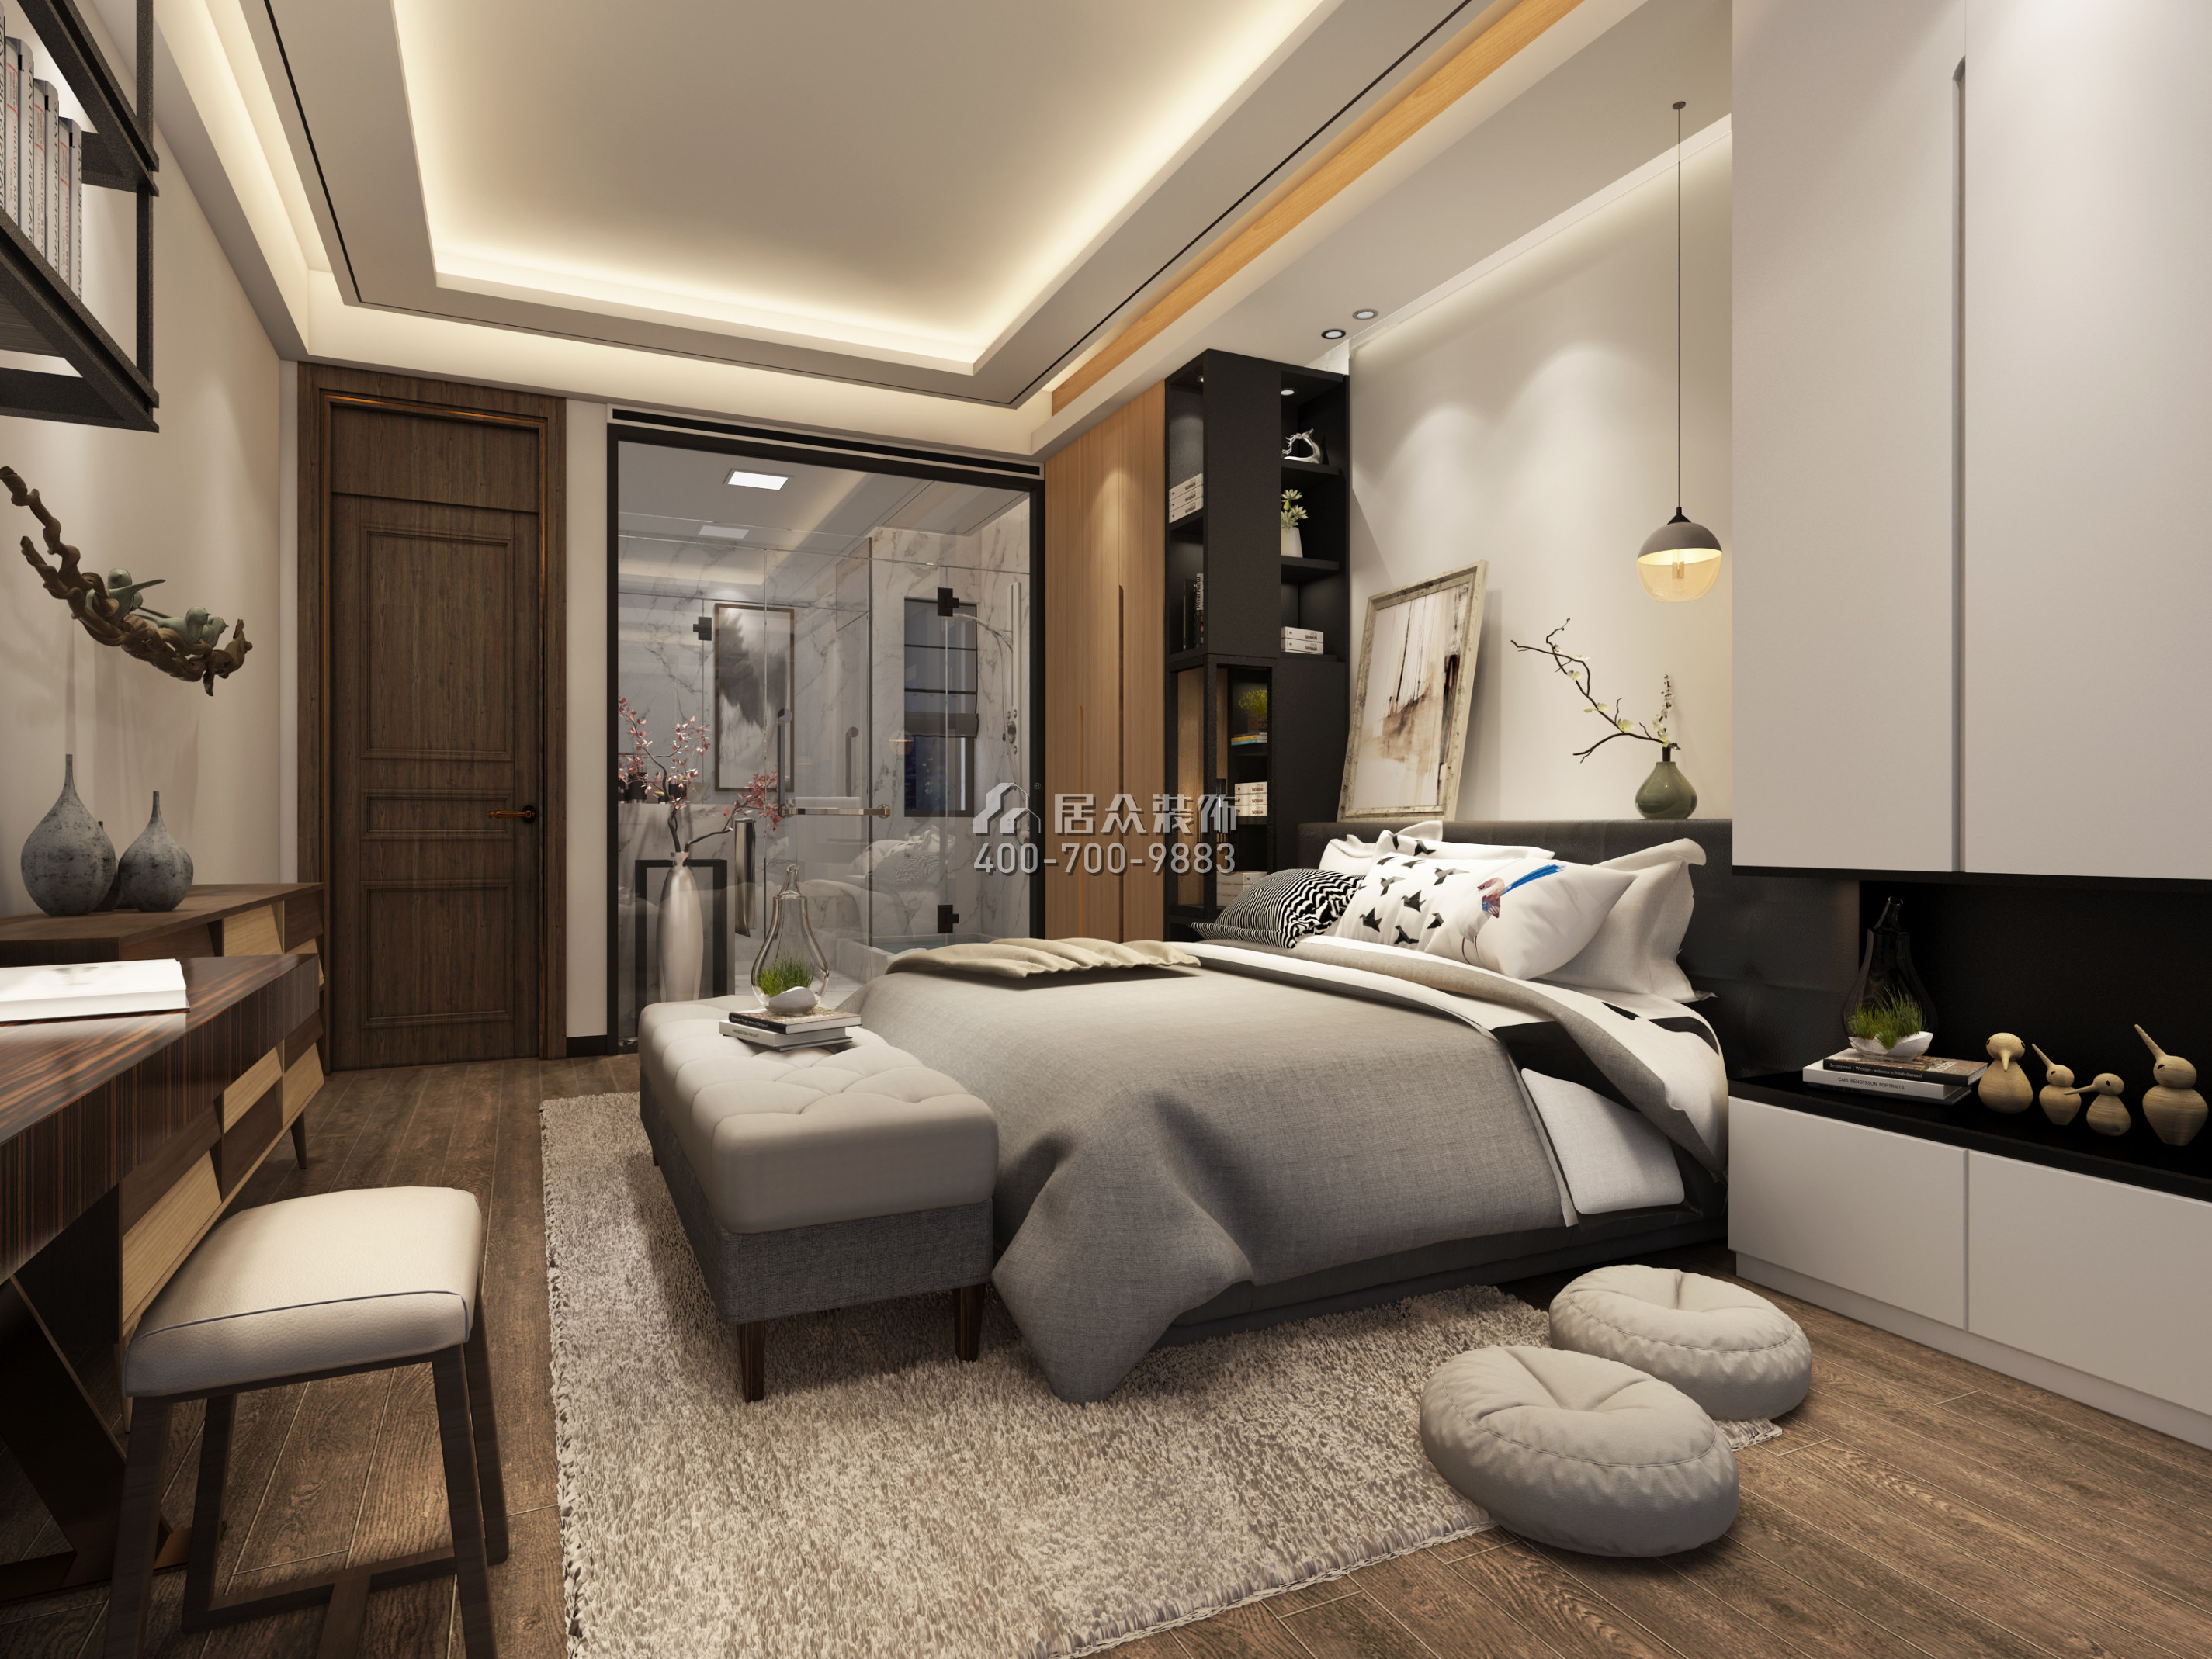 大康福盈门128平方米中式风格平层户型卧室装修效果图